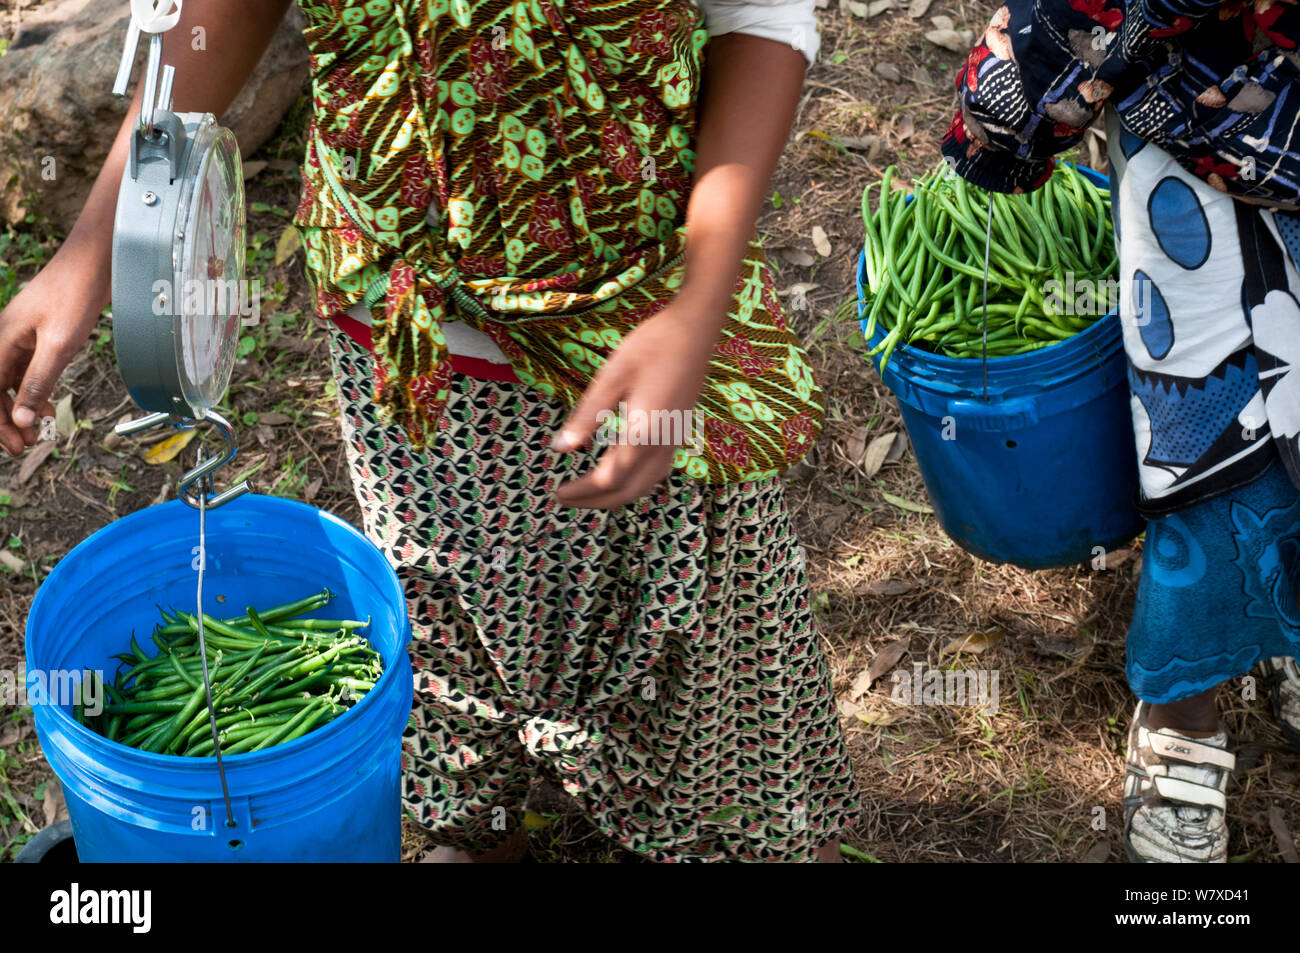 Les femmes pesant des seaux de haricots verts récoltés (Phaseolus vulgaris). Les femmes portent des vêtements traditionnels (&# 39;kangas&# 39# 39 ; et &&# 39;kitenge ;). Une ferme commerciale, la Tanzanie, l'Afrique de l'Est. Août 2011. Banque D'Images